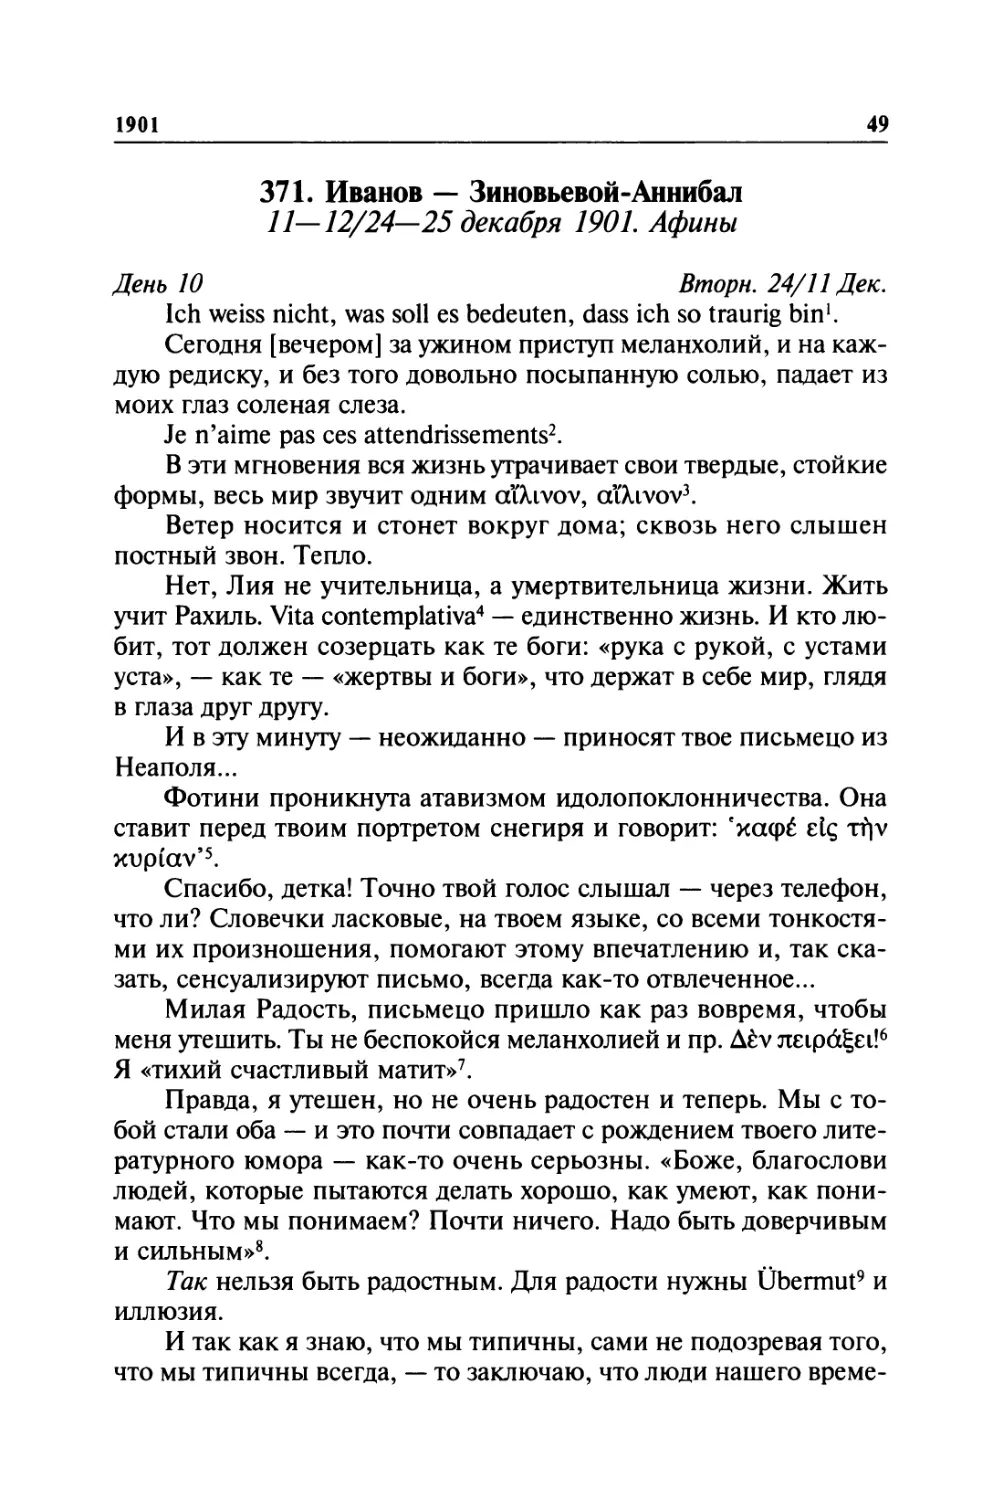 371. Иванов — Зиновьевой-Аннибал. 11—12/24—25декабря 1901. Афины